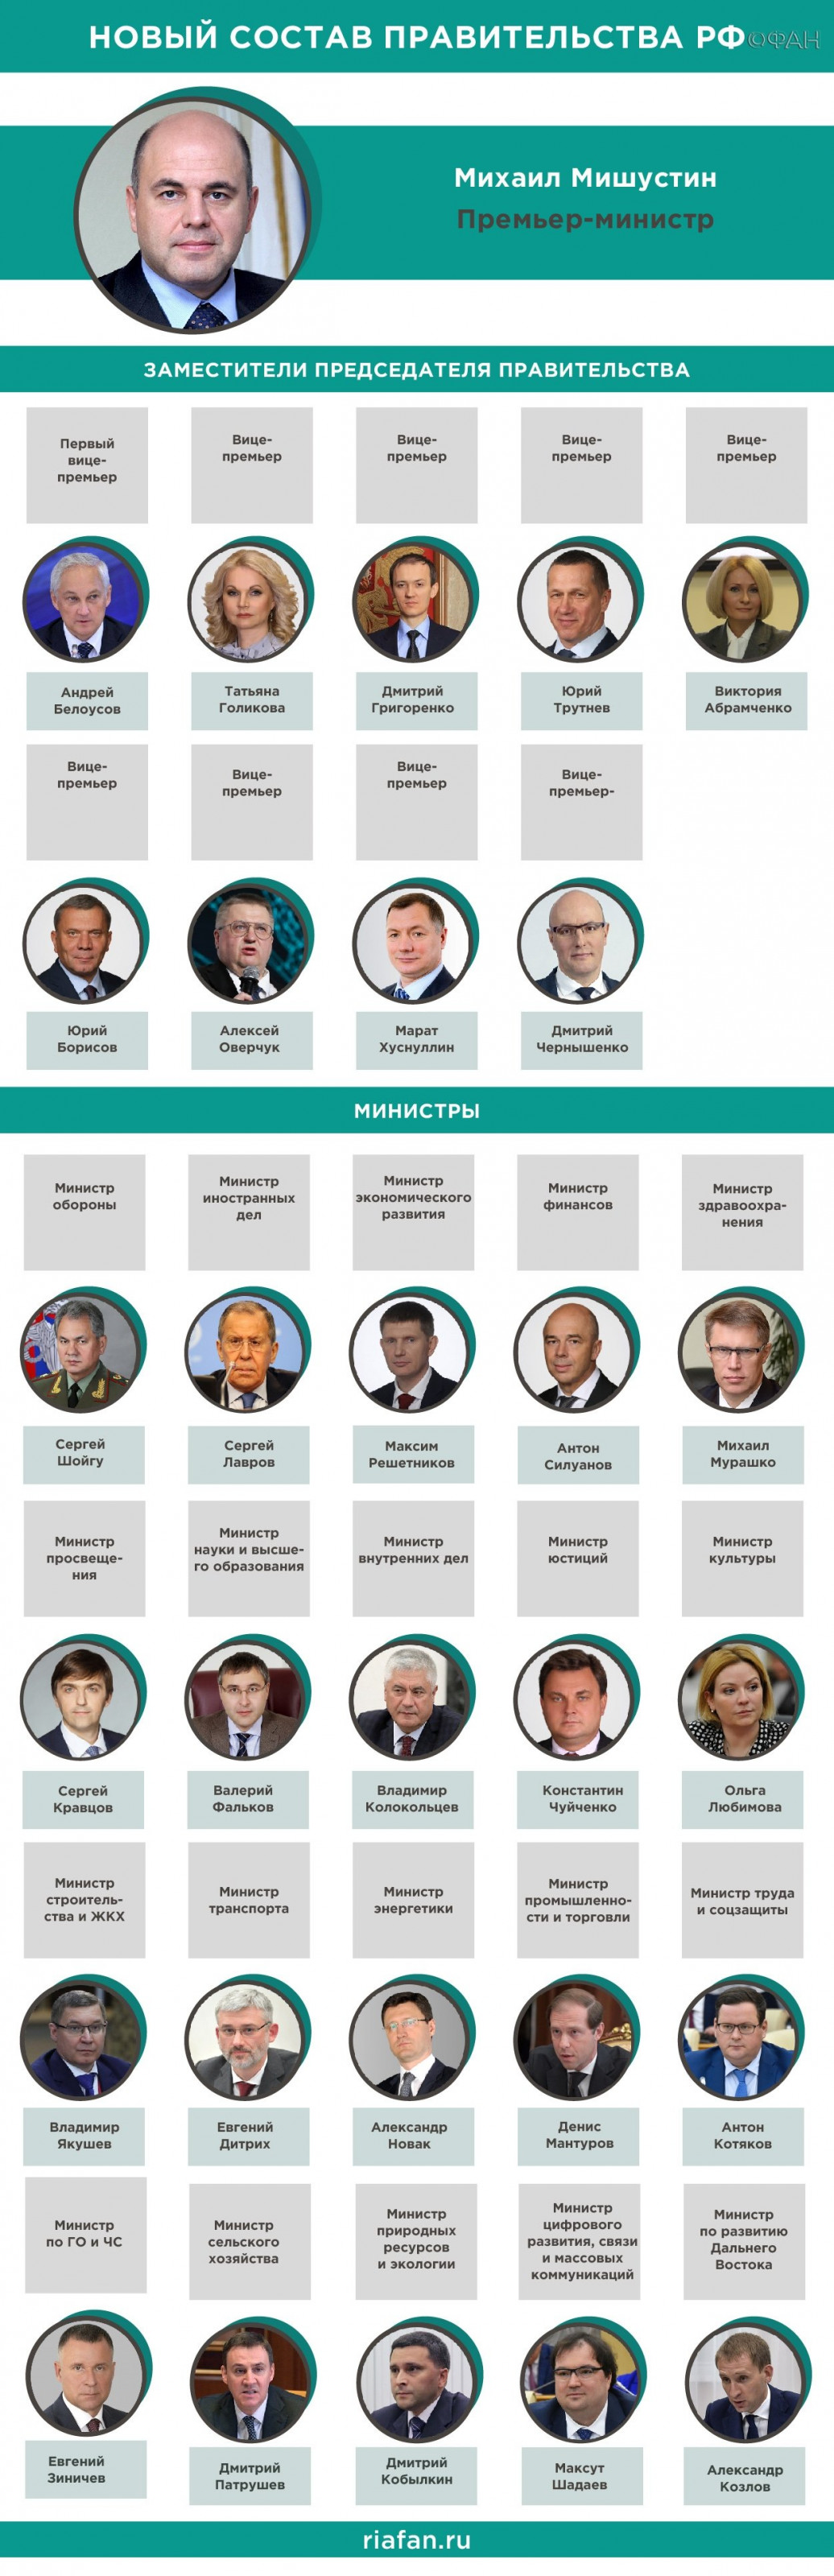 Депутат Чернышов объяснил назначение Кравцова и Фалькова на посты министров РФ